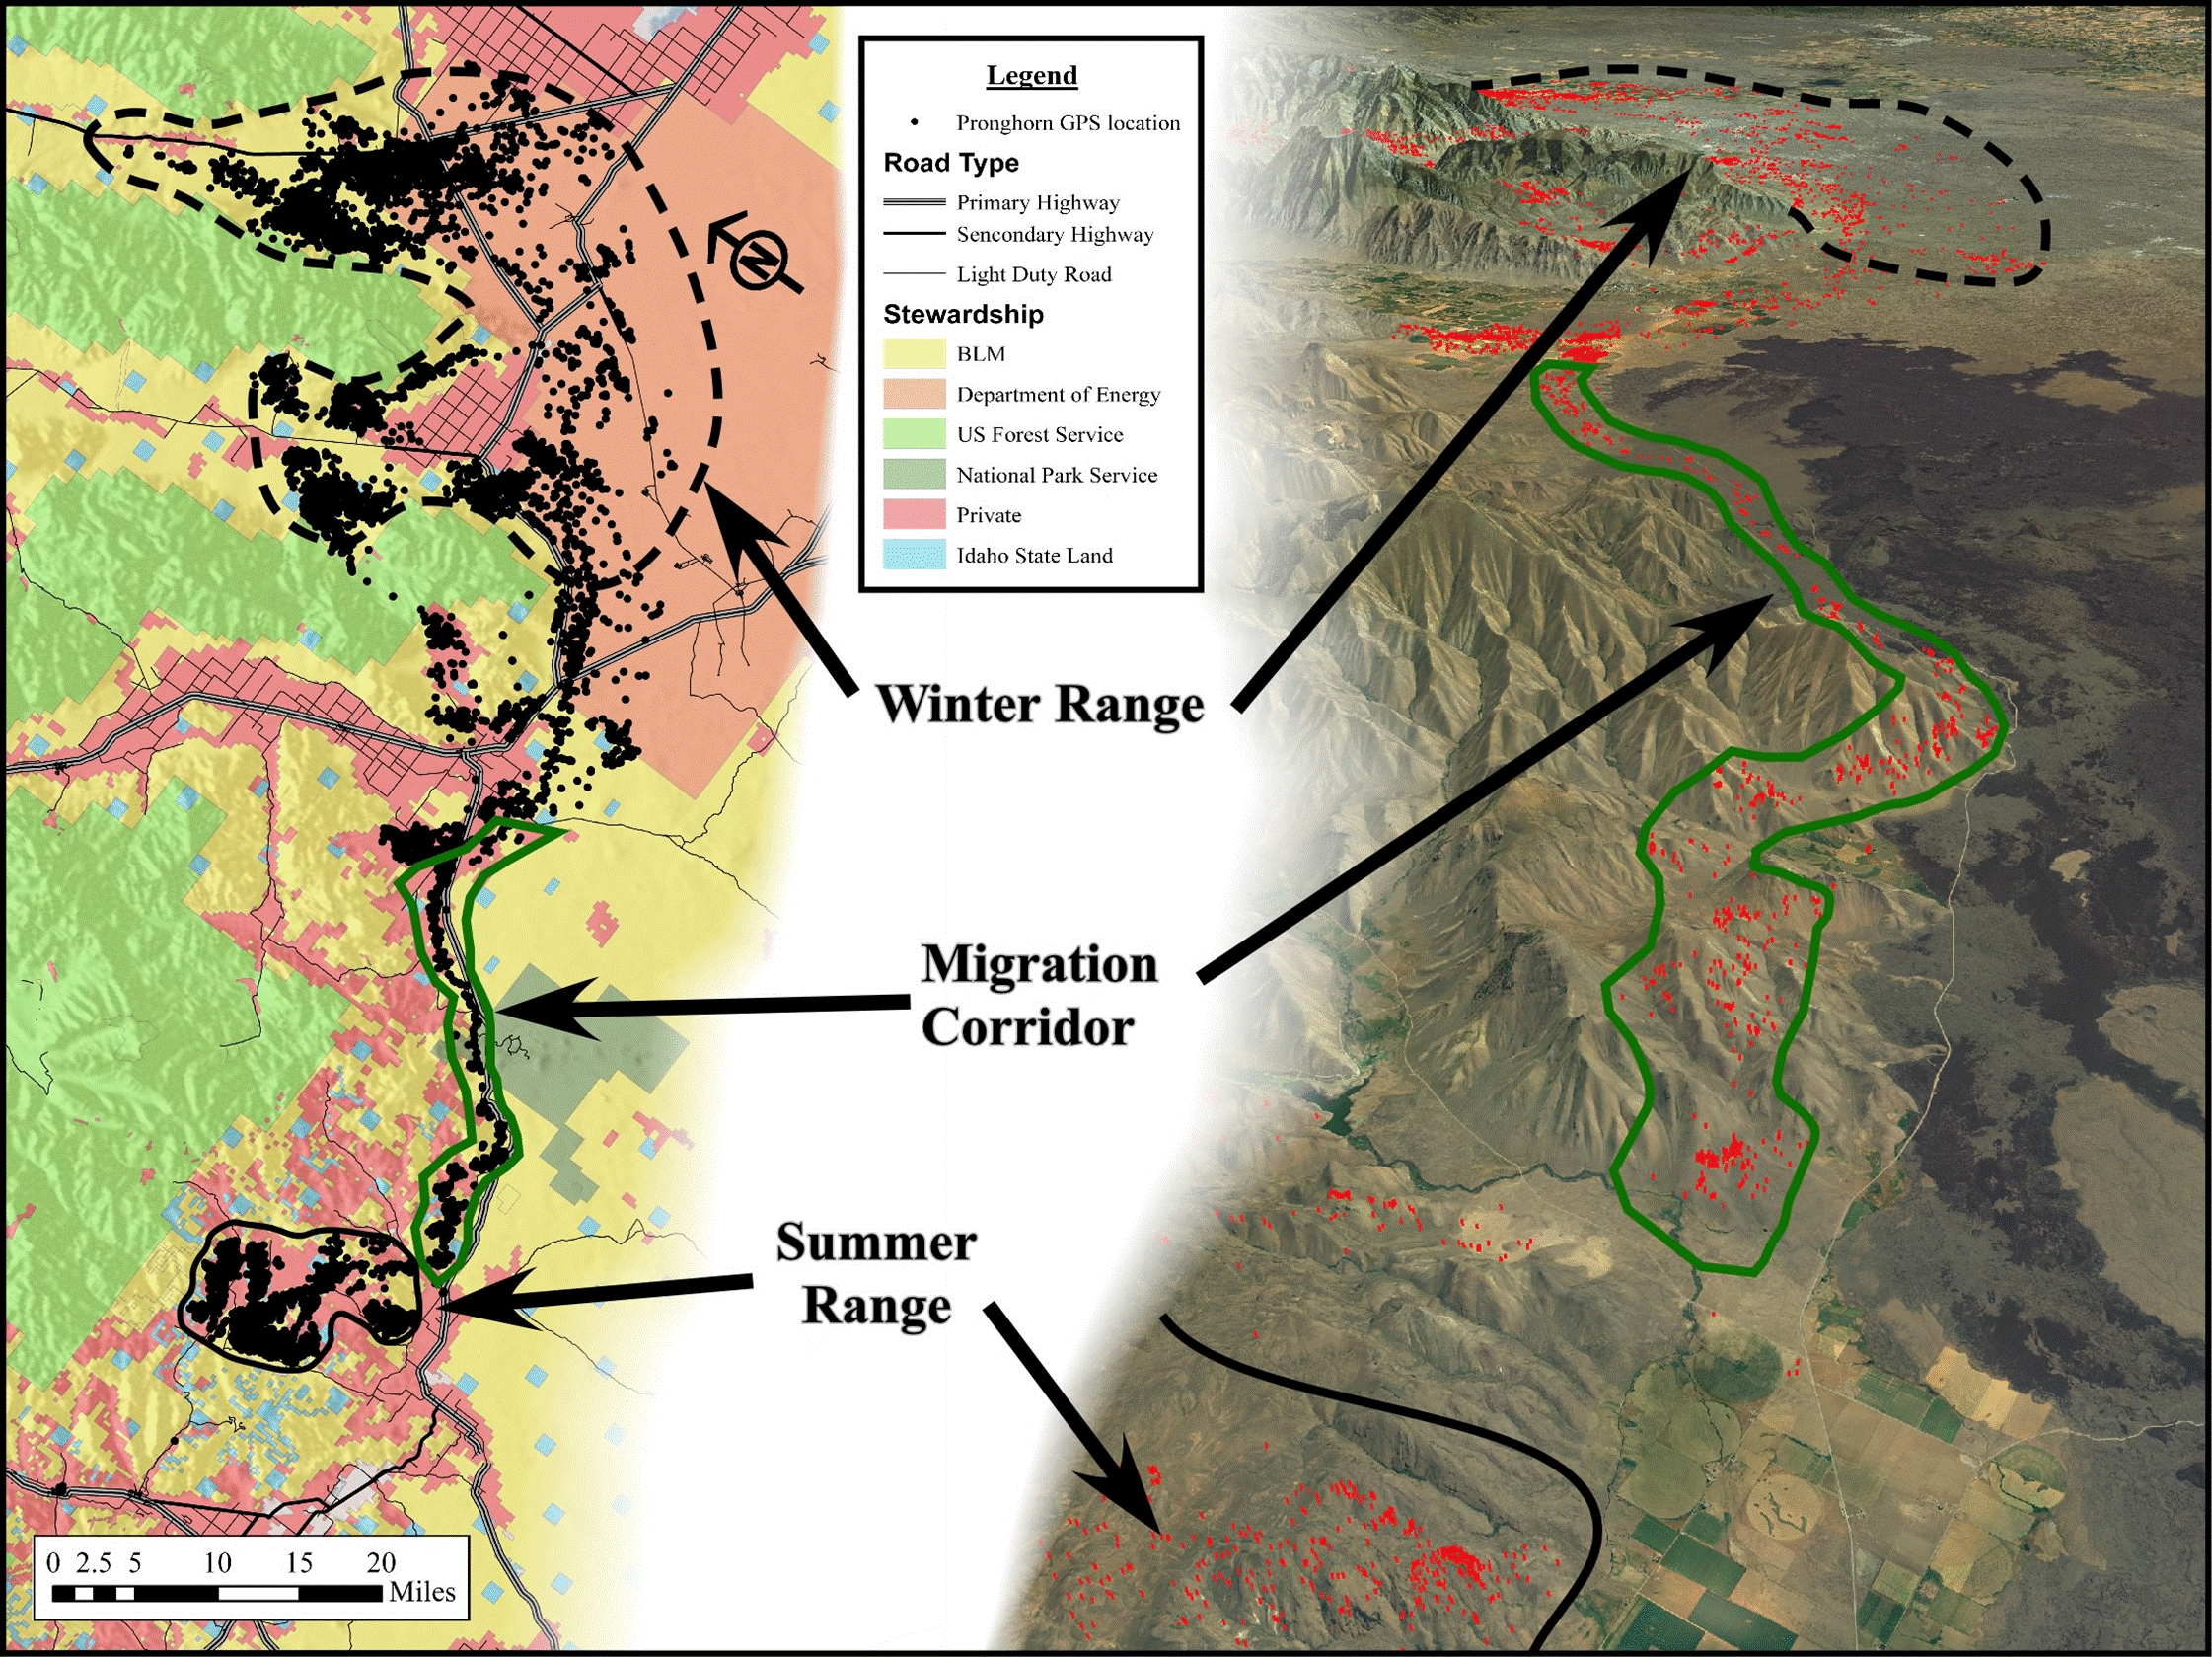 pronghorn migration map